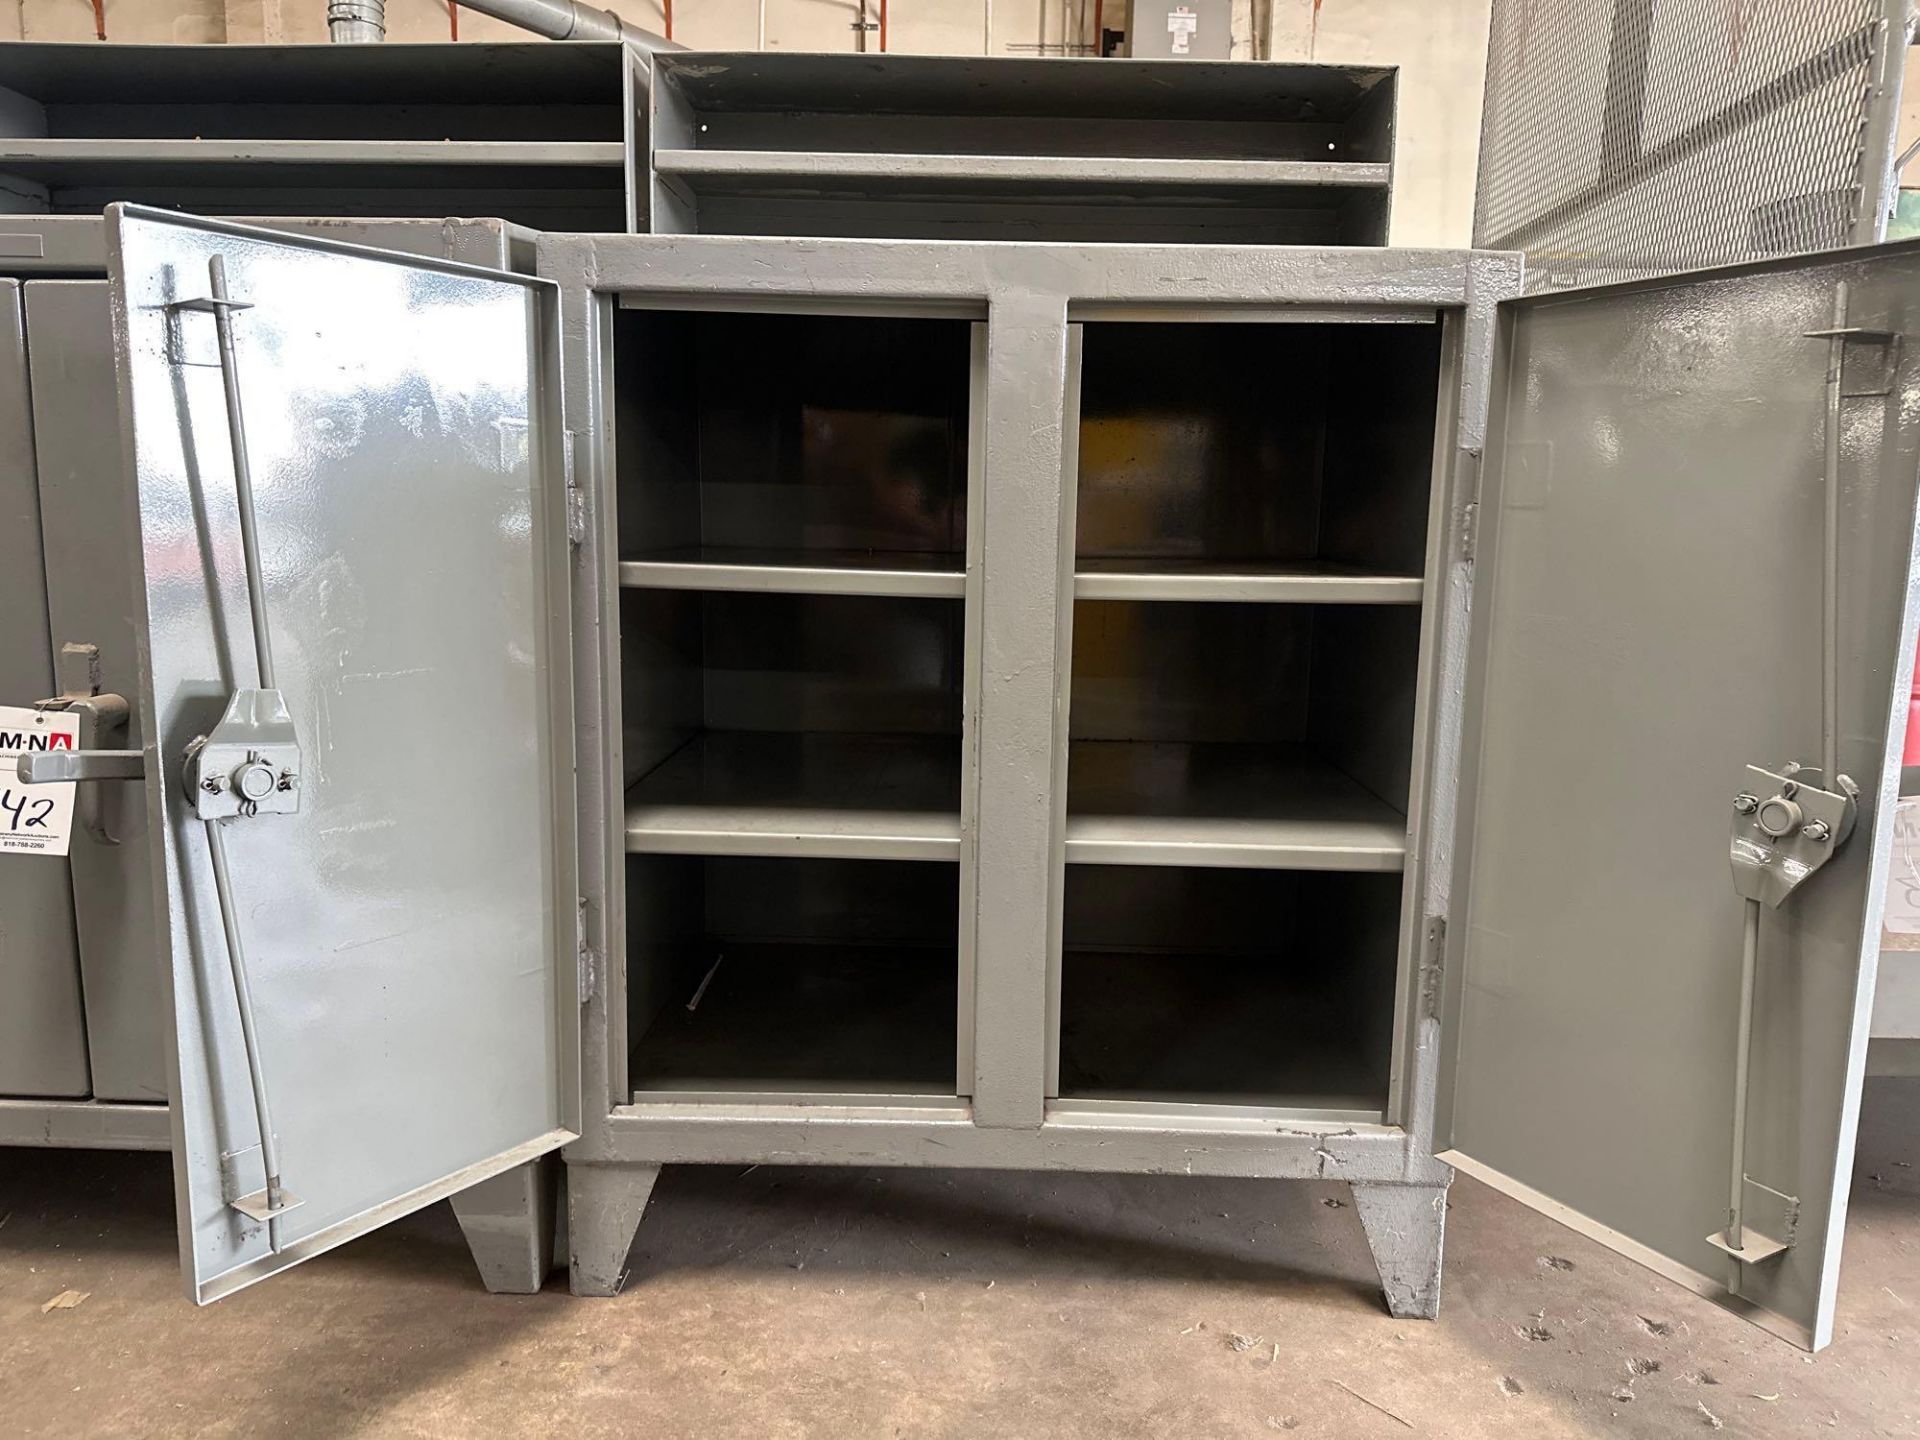 44”x36”x28” Heavy Duty Steel Cabinet - Image 3 of 3